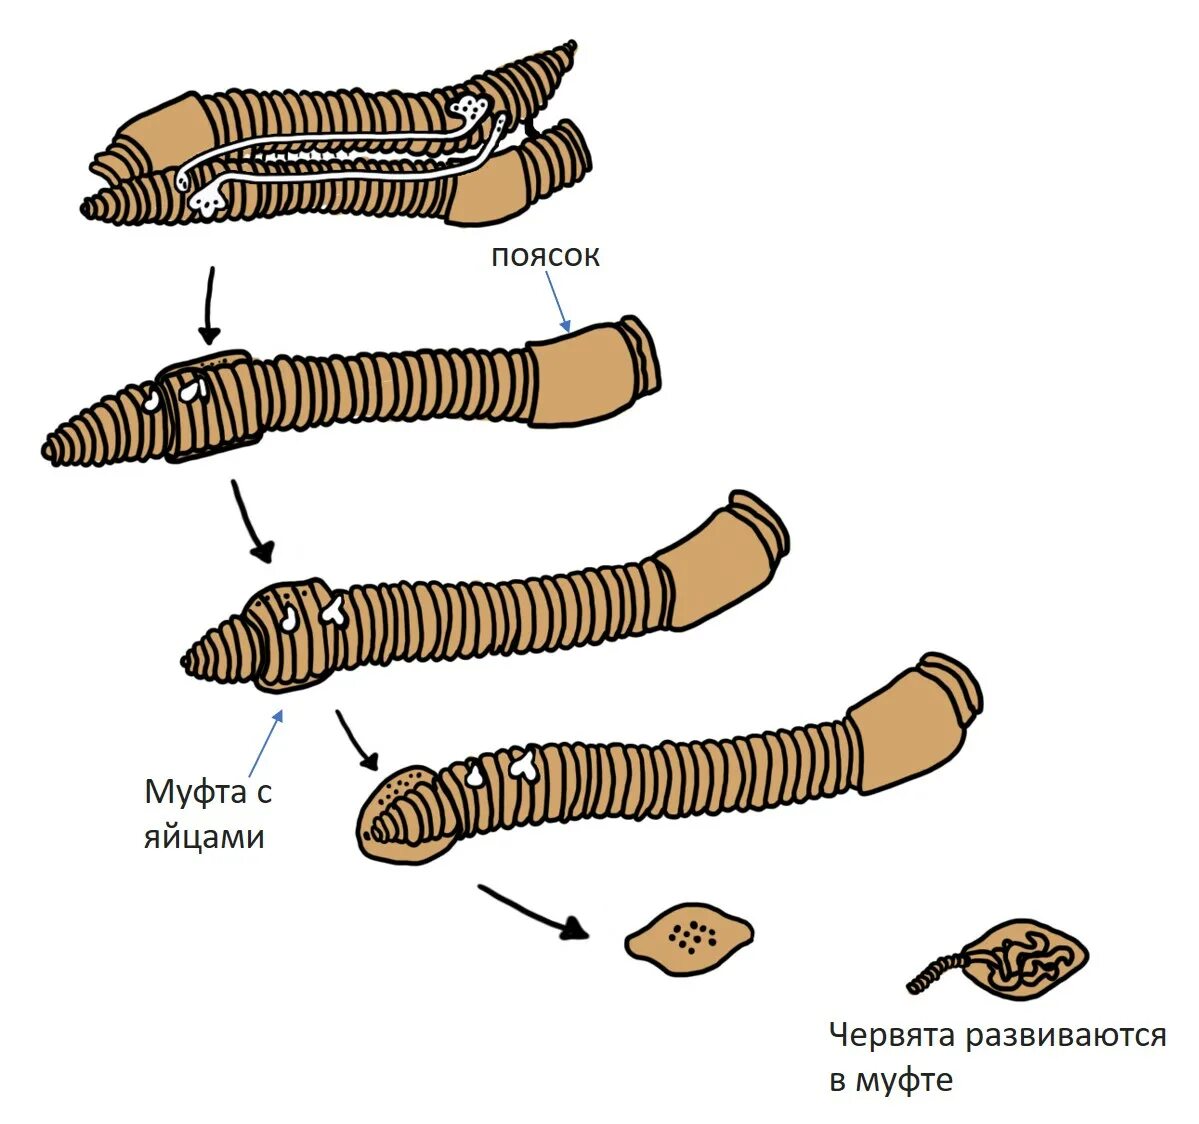 Развитие с метаморфозом дождевой червь. Размножение кольчатых червей. Половая система дождевого червя. Схема размножения кольчатых червей.